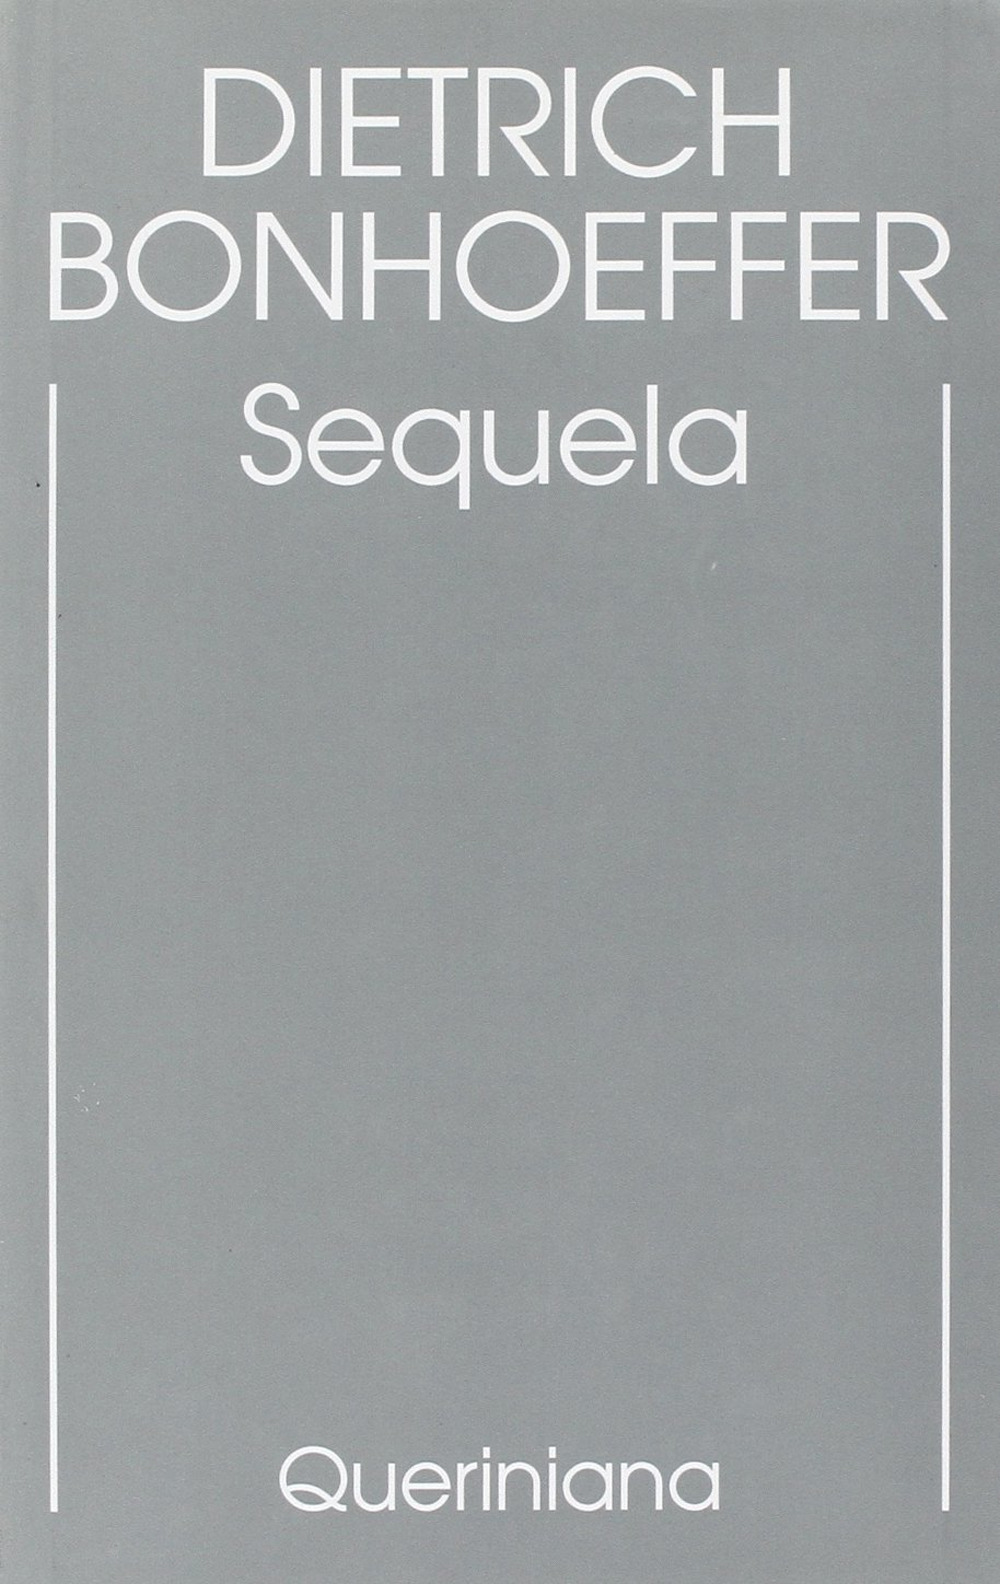 Edizione critica delle opere di D. Bonhoeffer. Ediz. critica. Vol. 4: Sequela